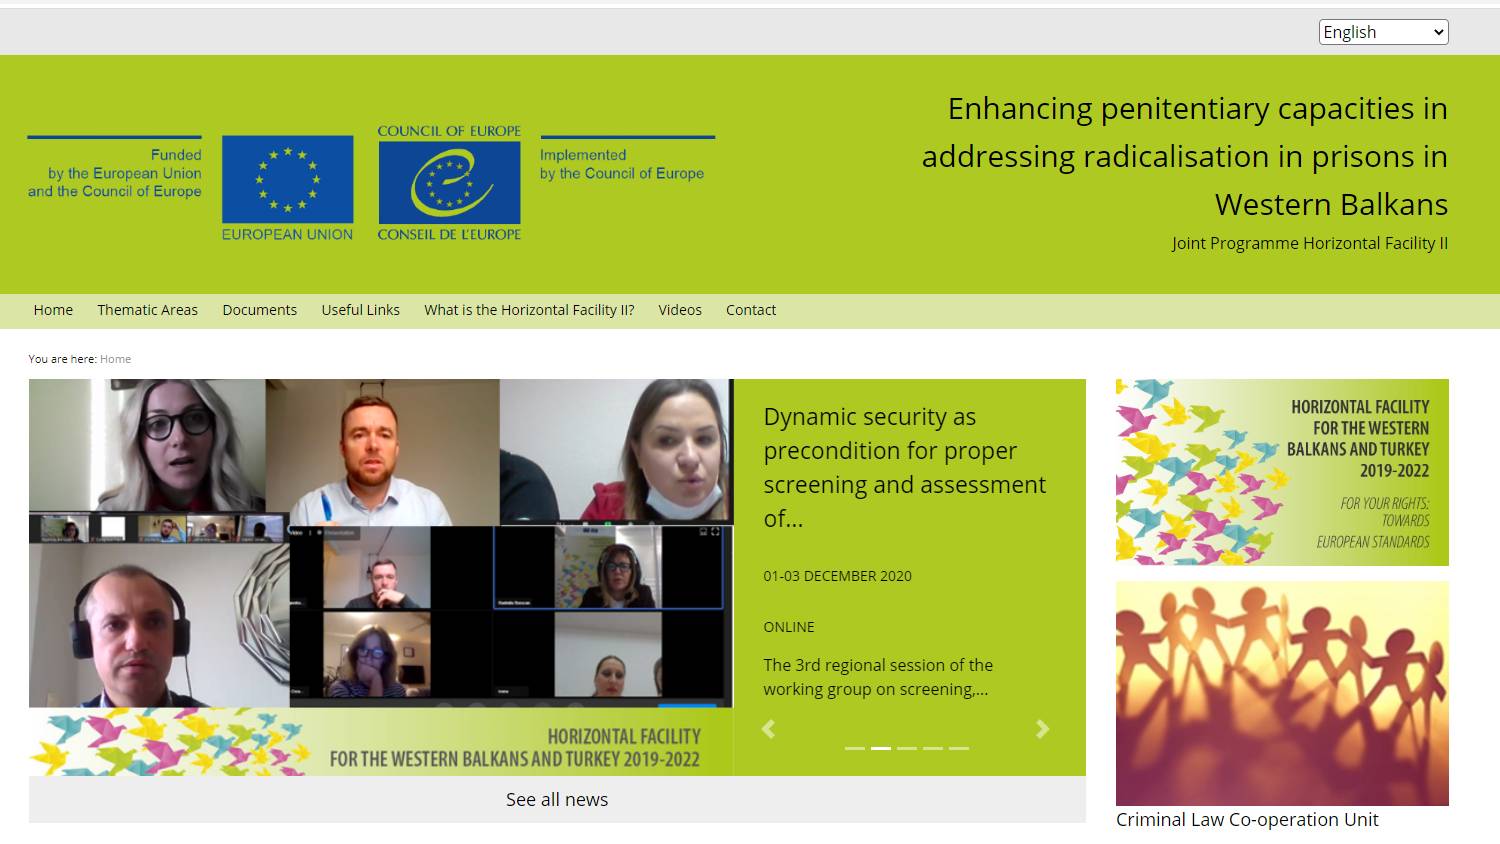 Prezantohet faqja/platforma e re në internet për adresimin e radikalizimit dhe ekstremizmit të dhunshëm në burgje